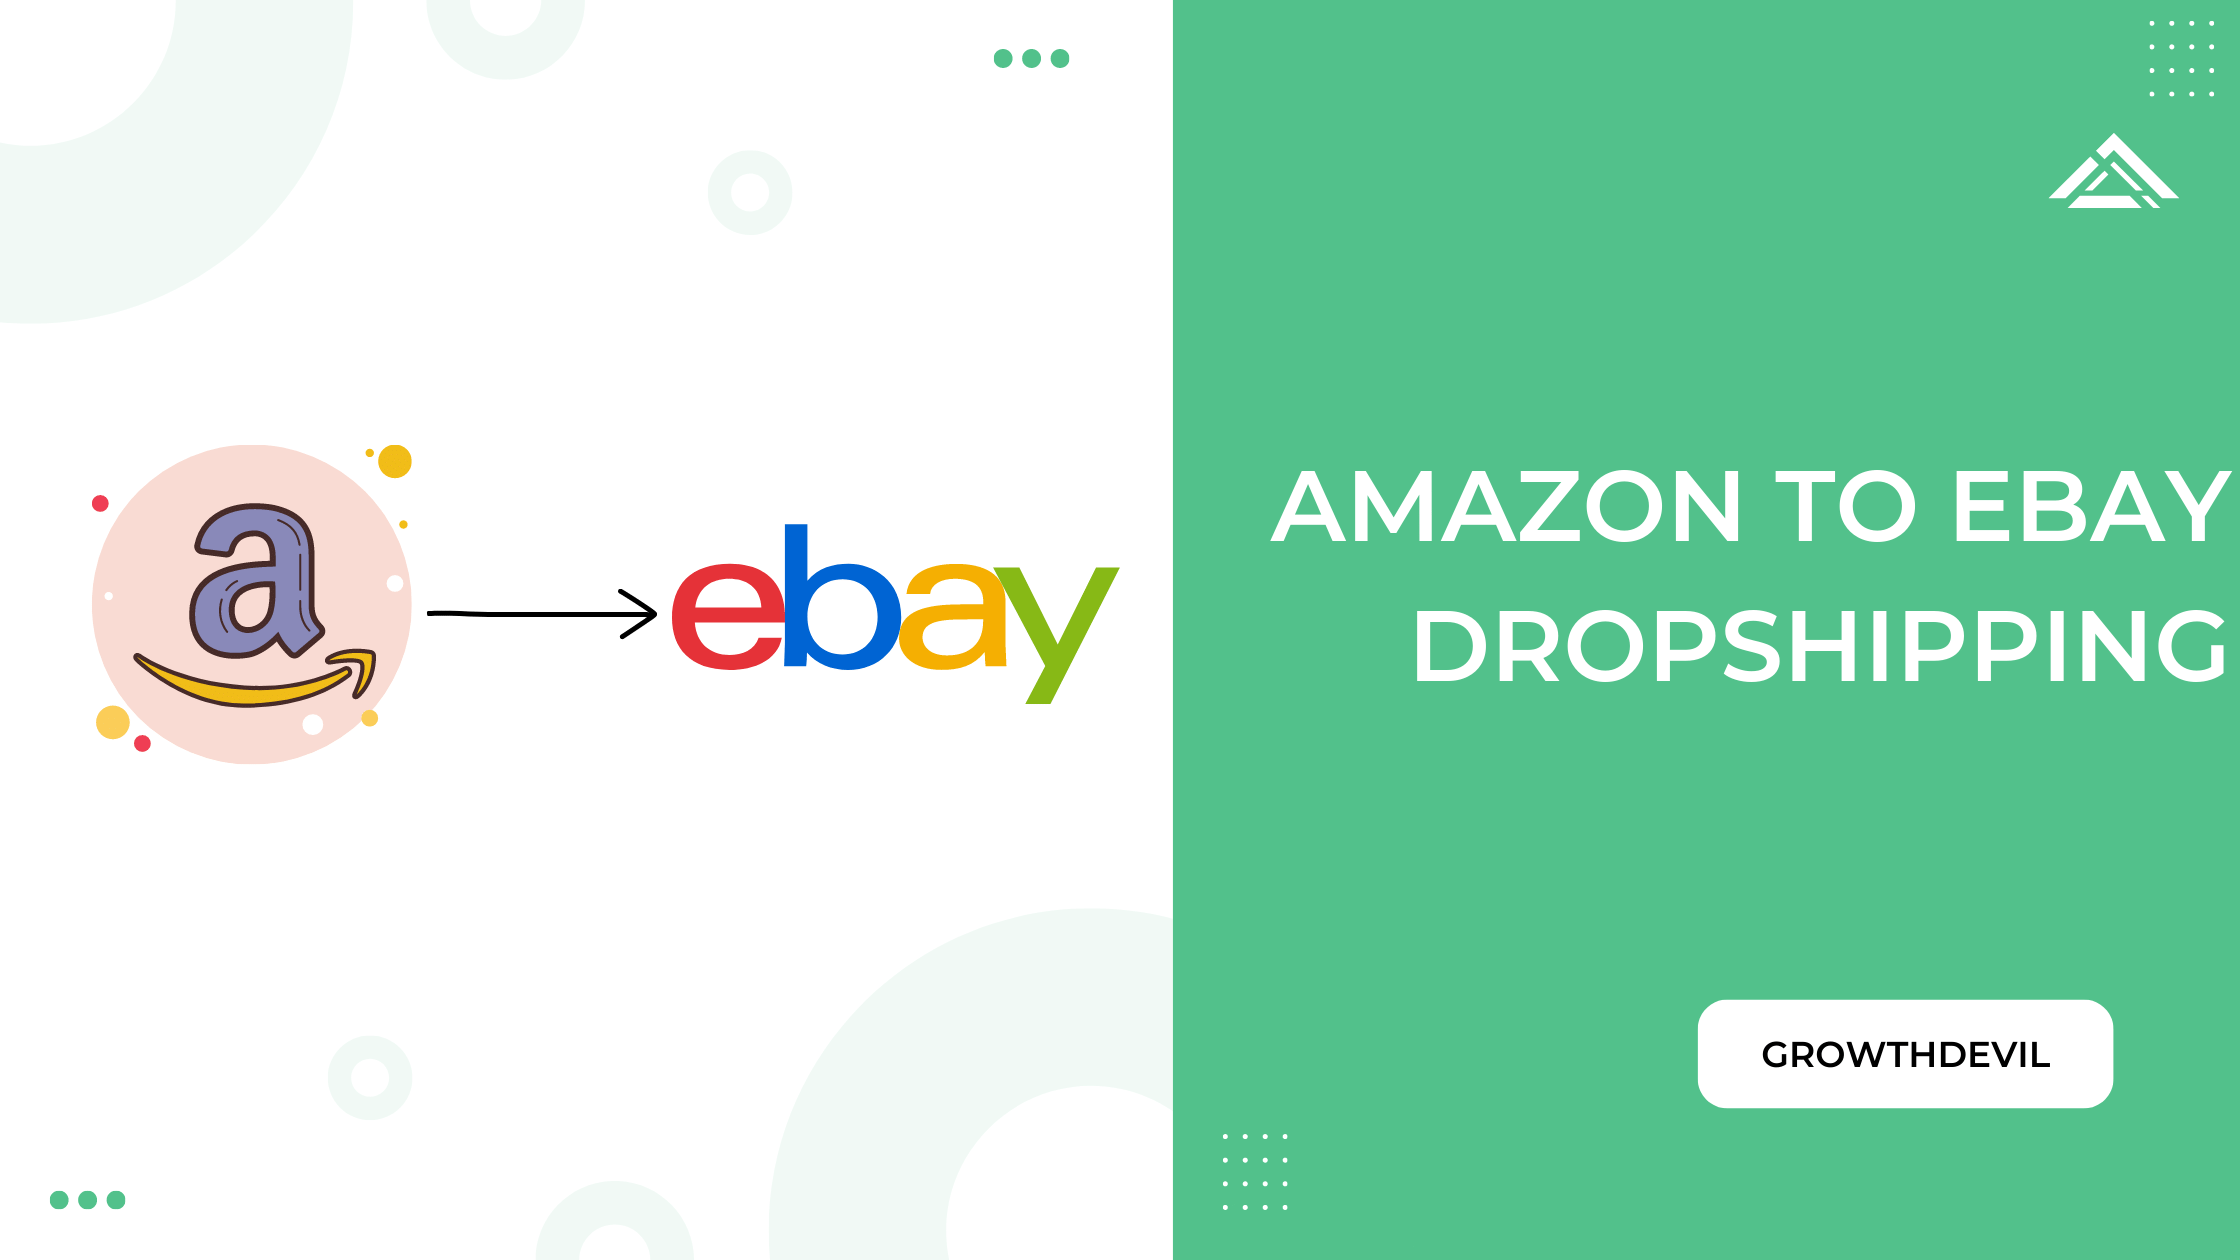 Amazon To eBay Dropshipping - GrowthDevil